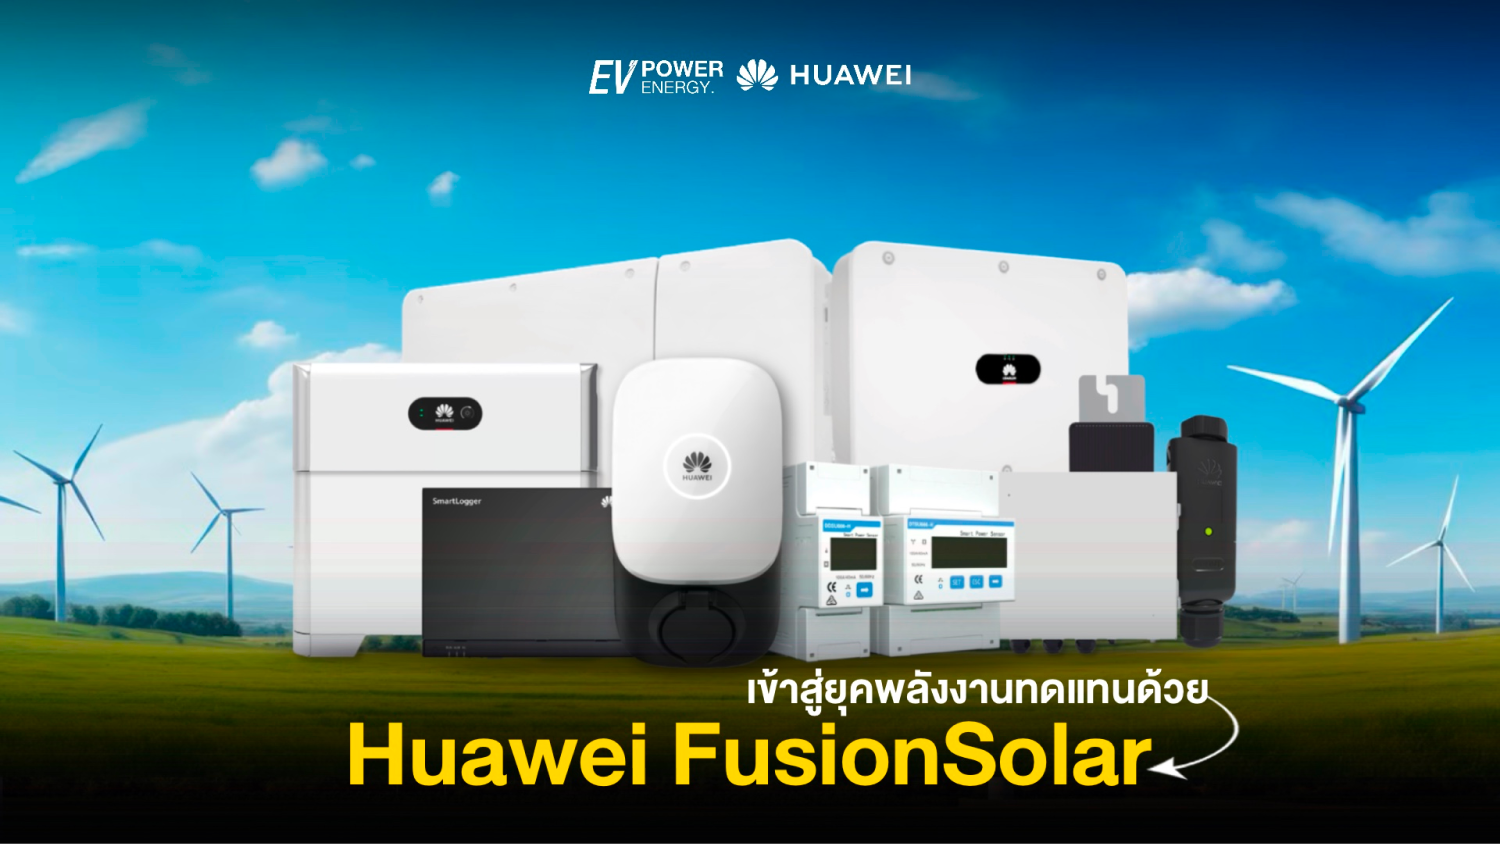 เข้าสู่ยุคพลังงานทดแทนกับ Huawei FusionSolar